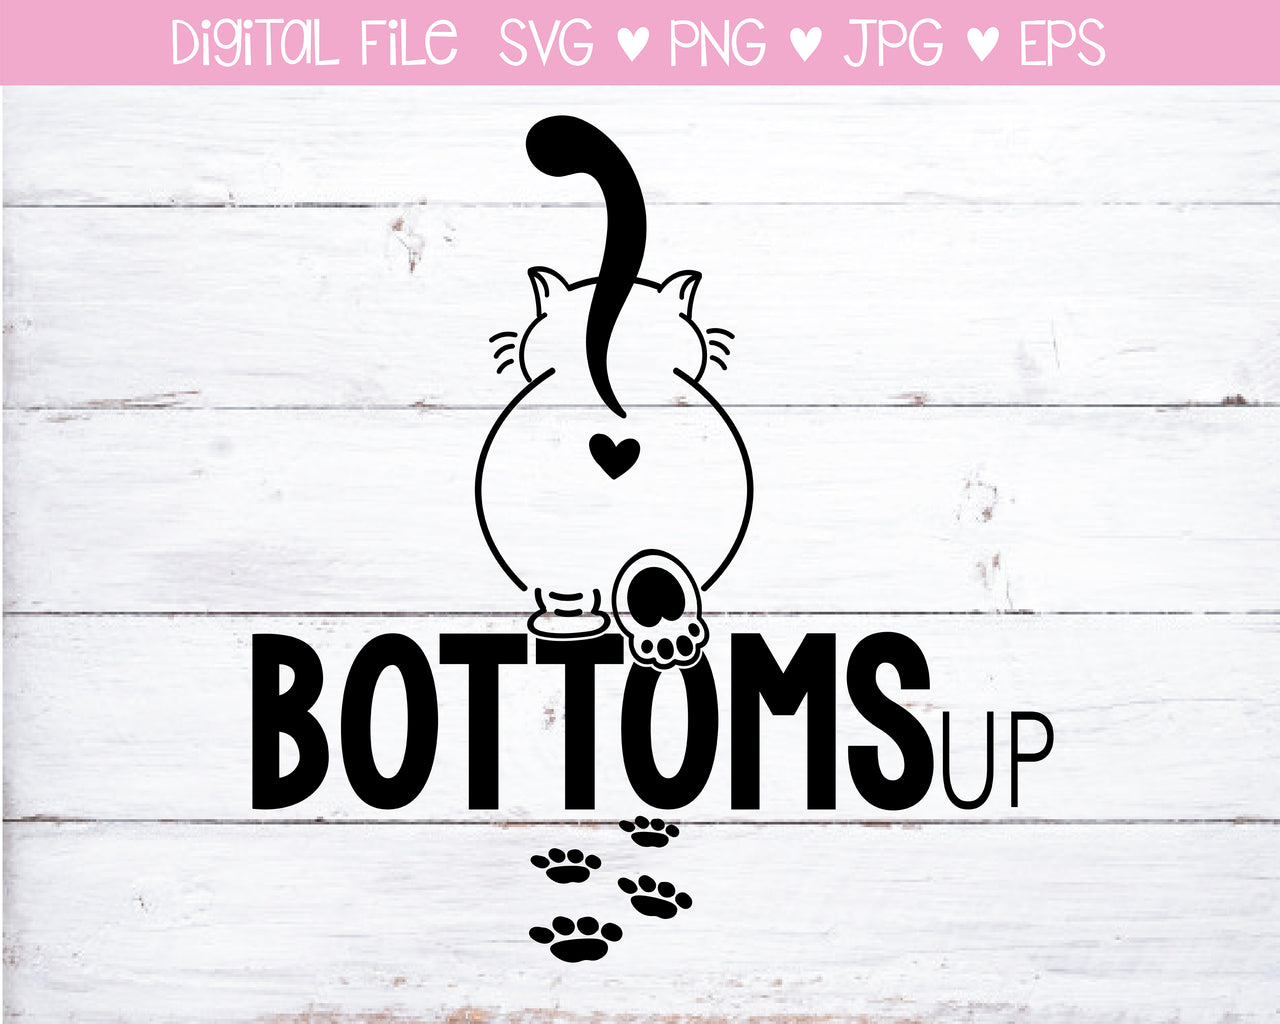 SVG Digital Download, Bottoms Up Kitty SVG